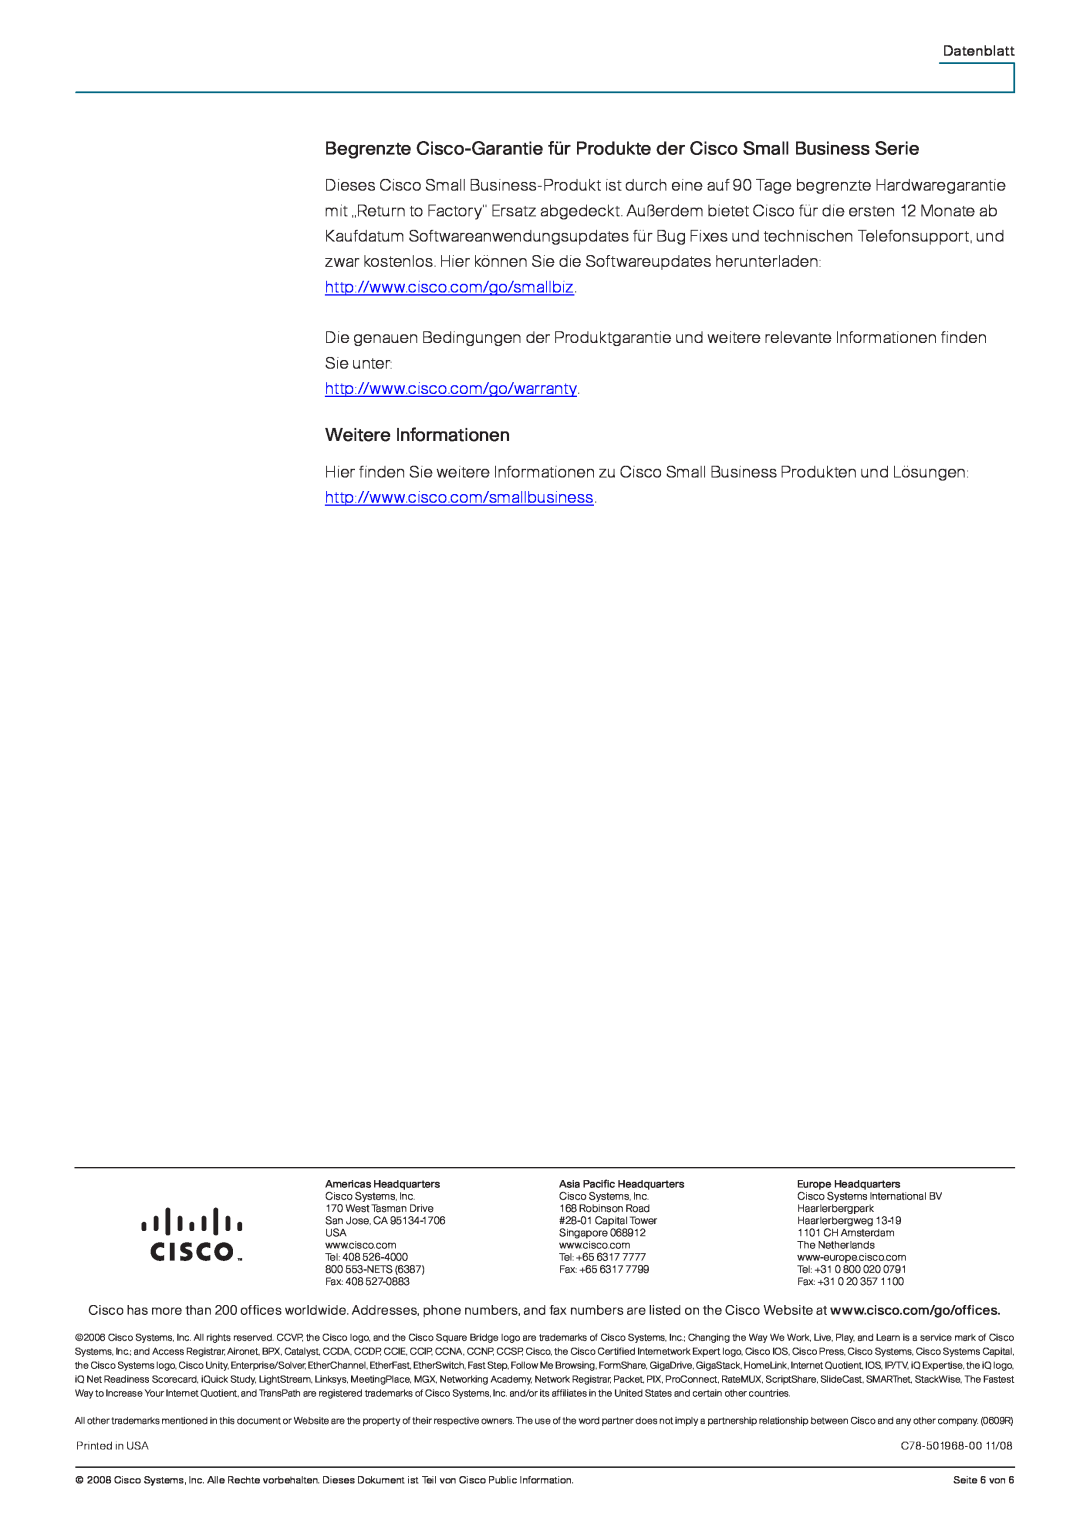 Cisco Systems WRP400 manual Begrenzte Cisco-Garantie für Produkte der Cisco Small Business Serie, Weitere Informationen 